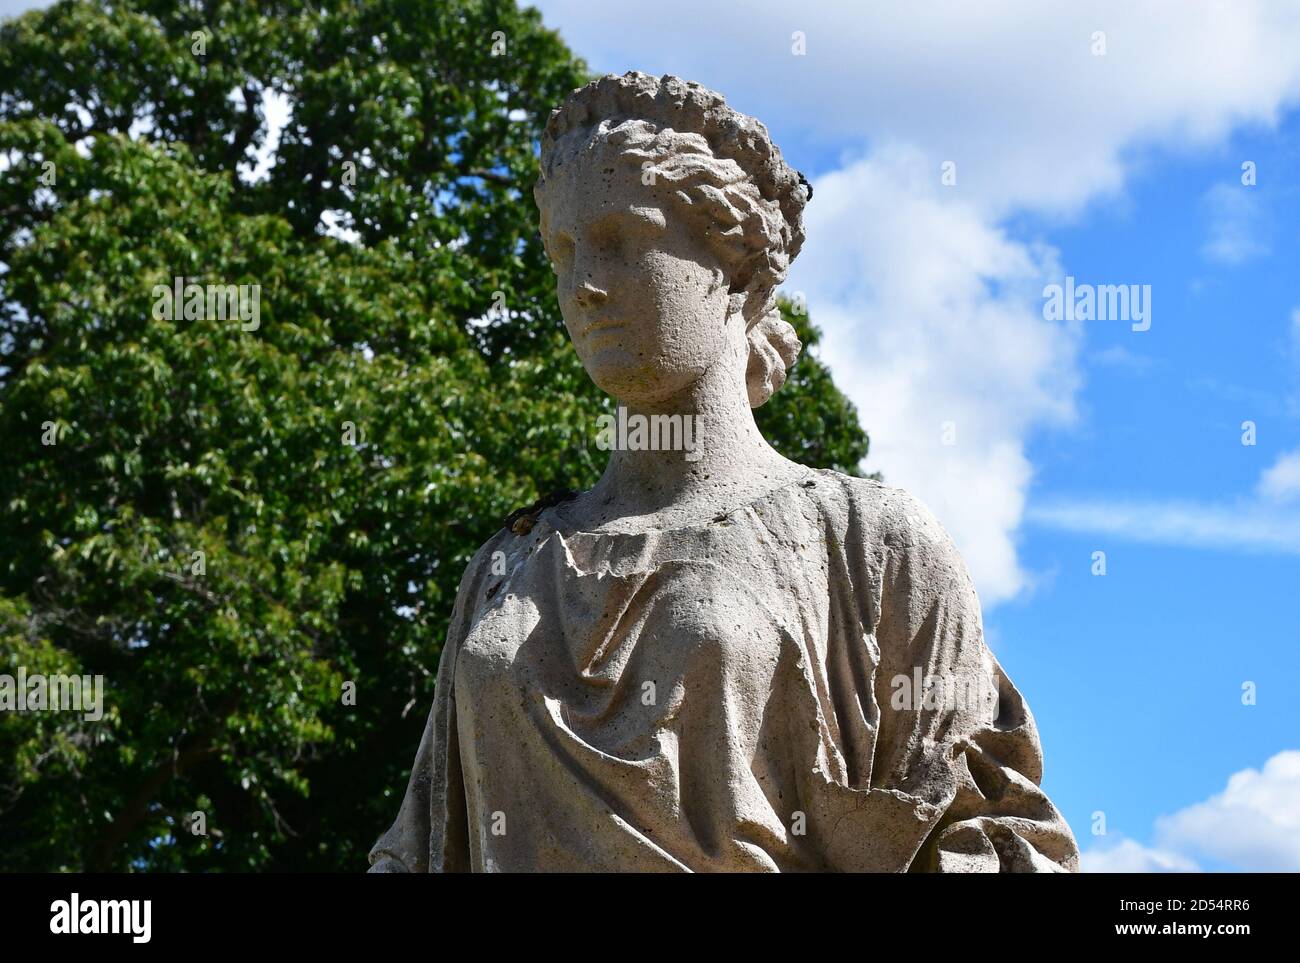 Griechische Göttin Statue in einem britischen Garten, England, Großbritannien Stockfoto